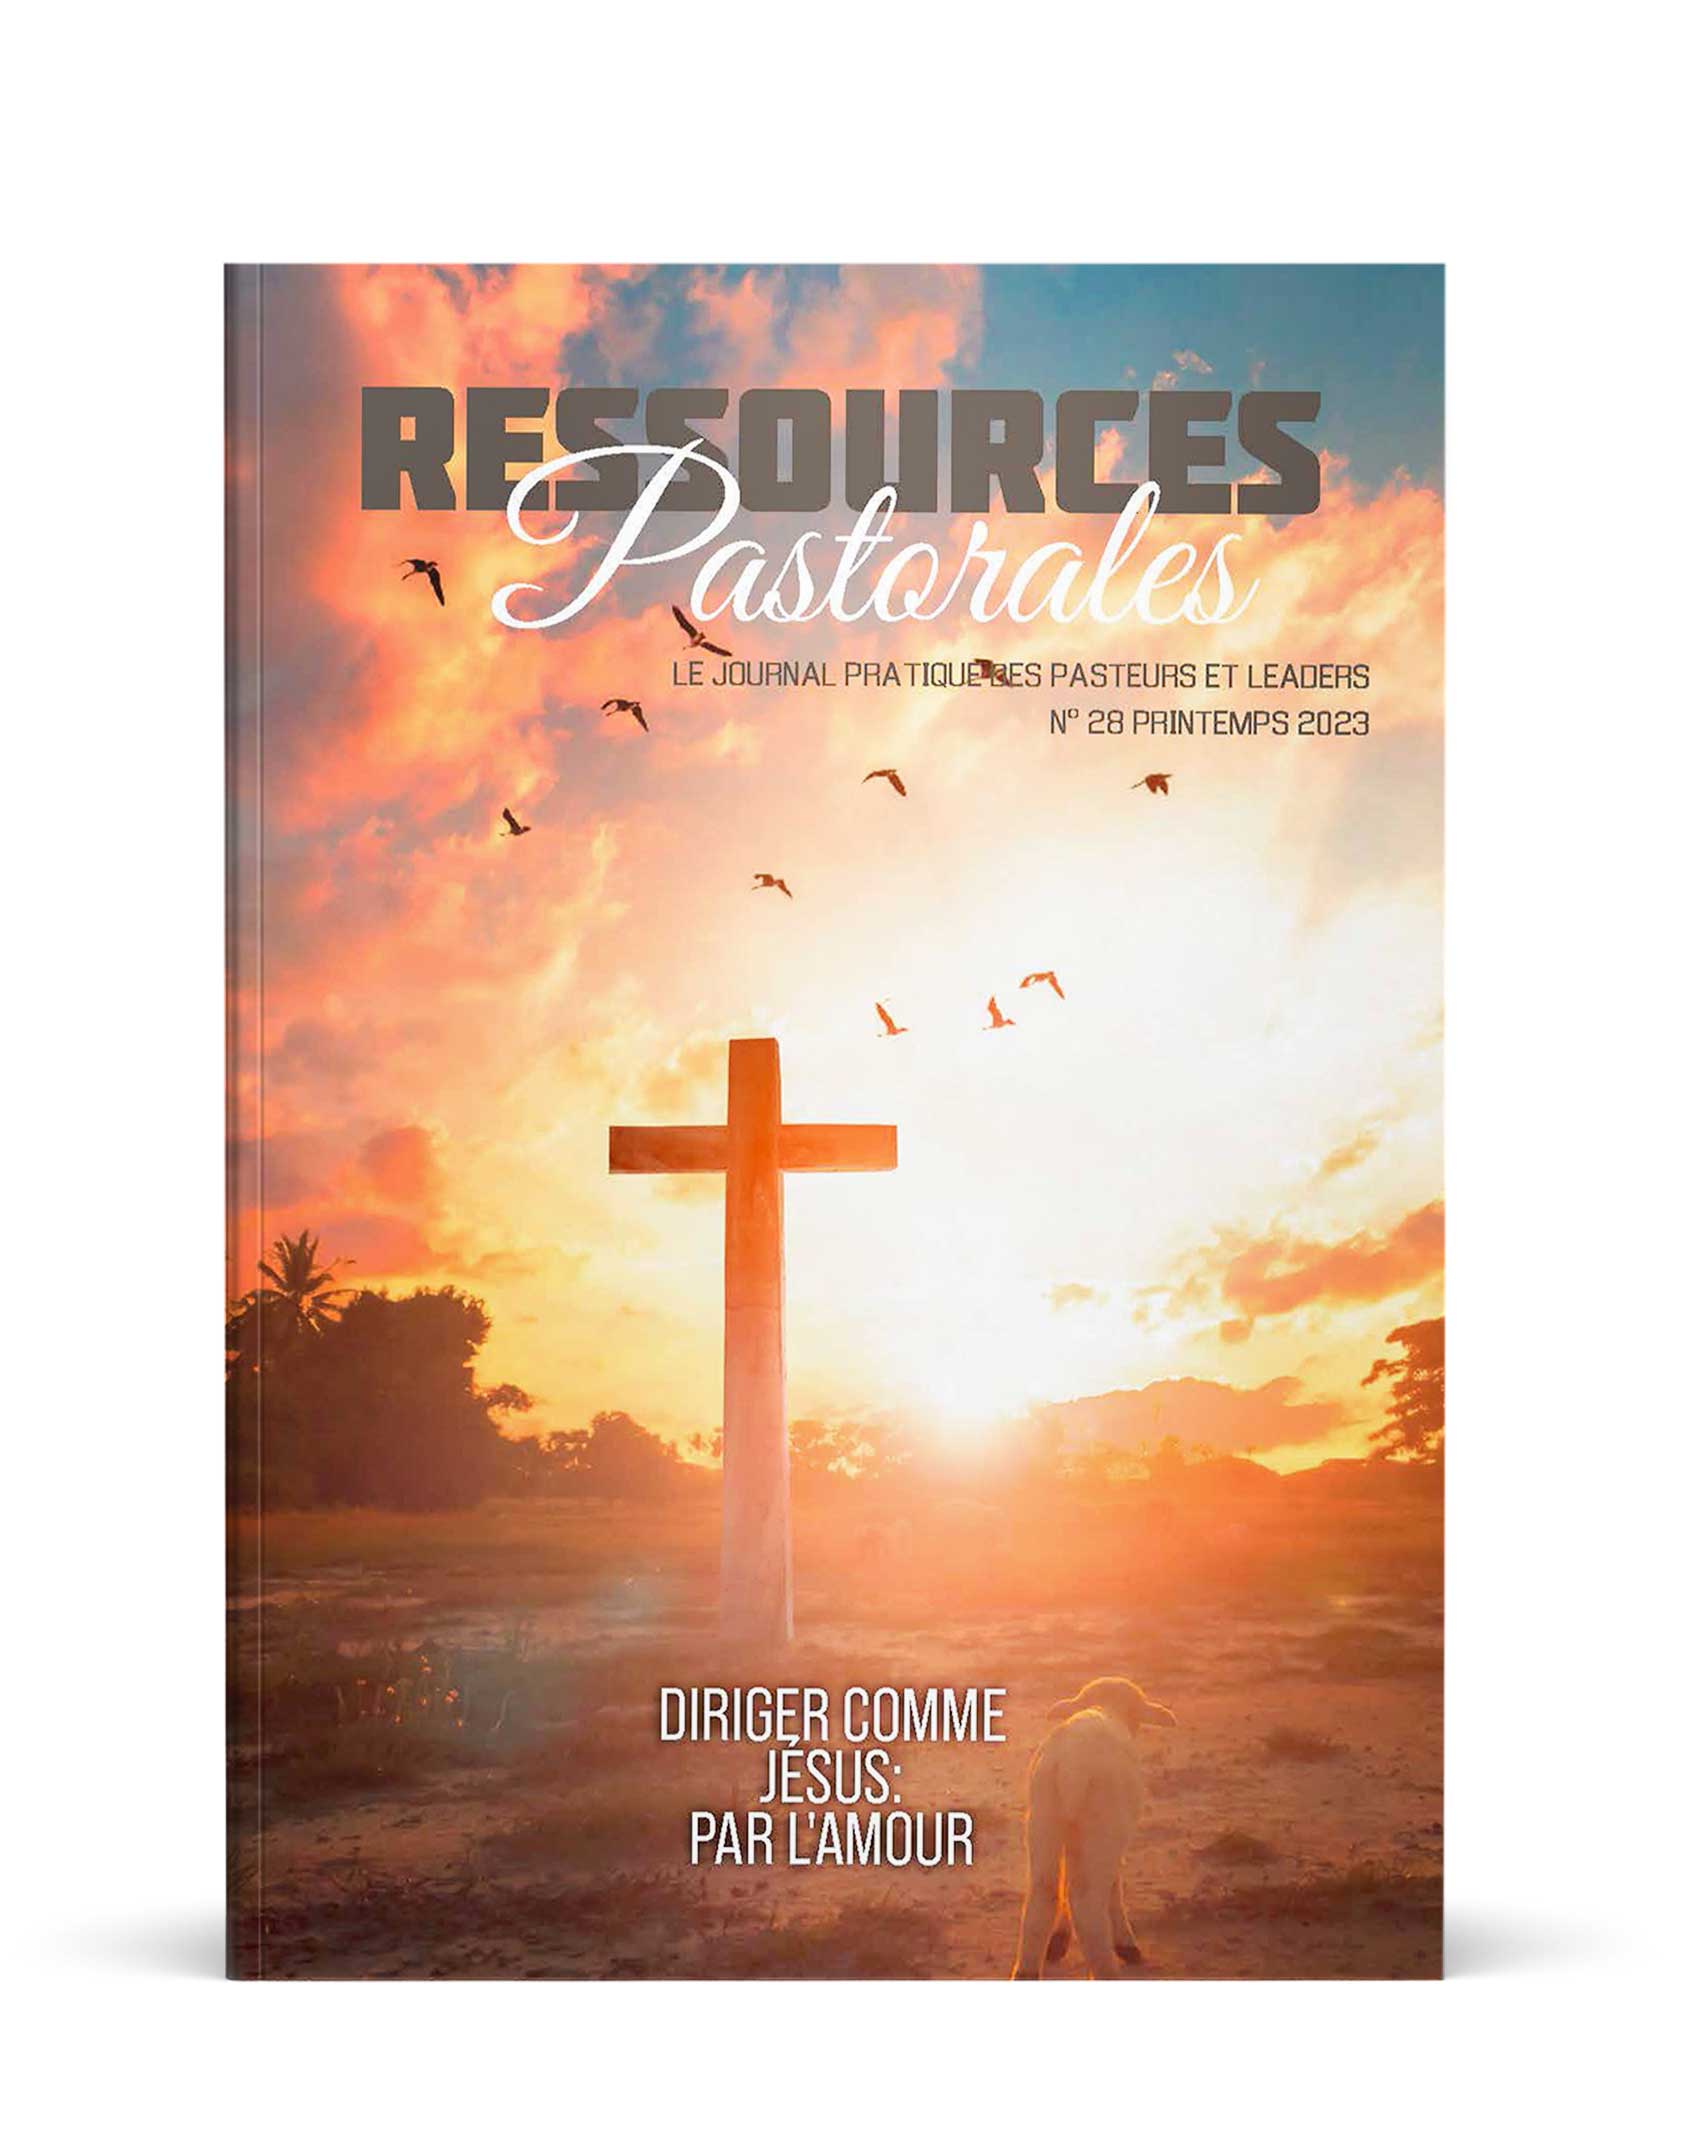 Diriger comme Jésus: Par l'amour | Ressources pastorales numéro 28